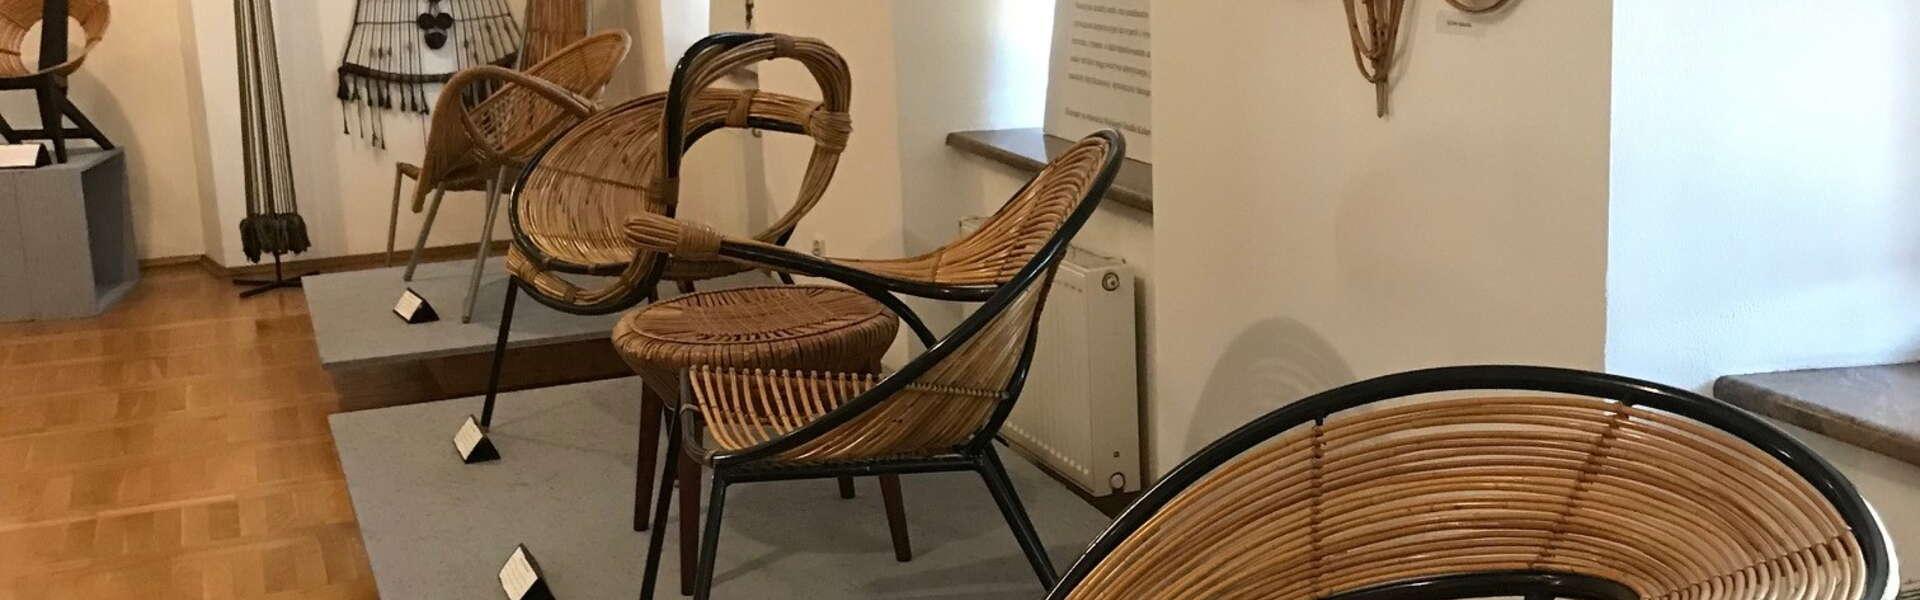 fotele z wikliny stojące w muzeum